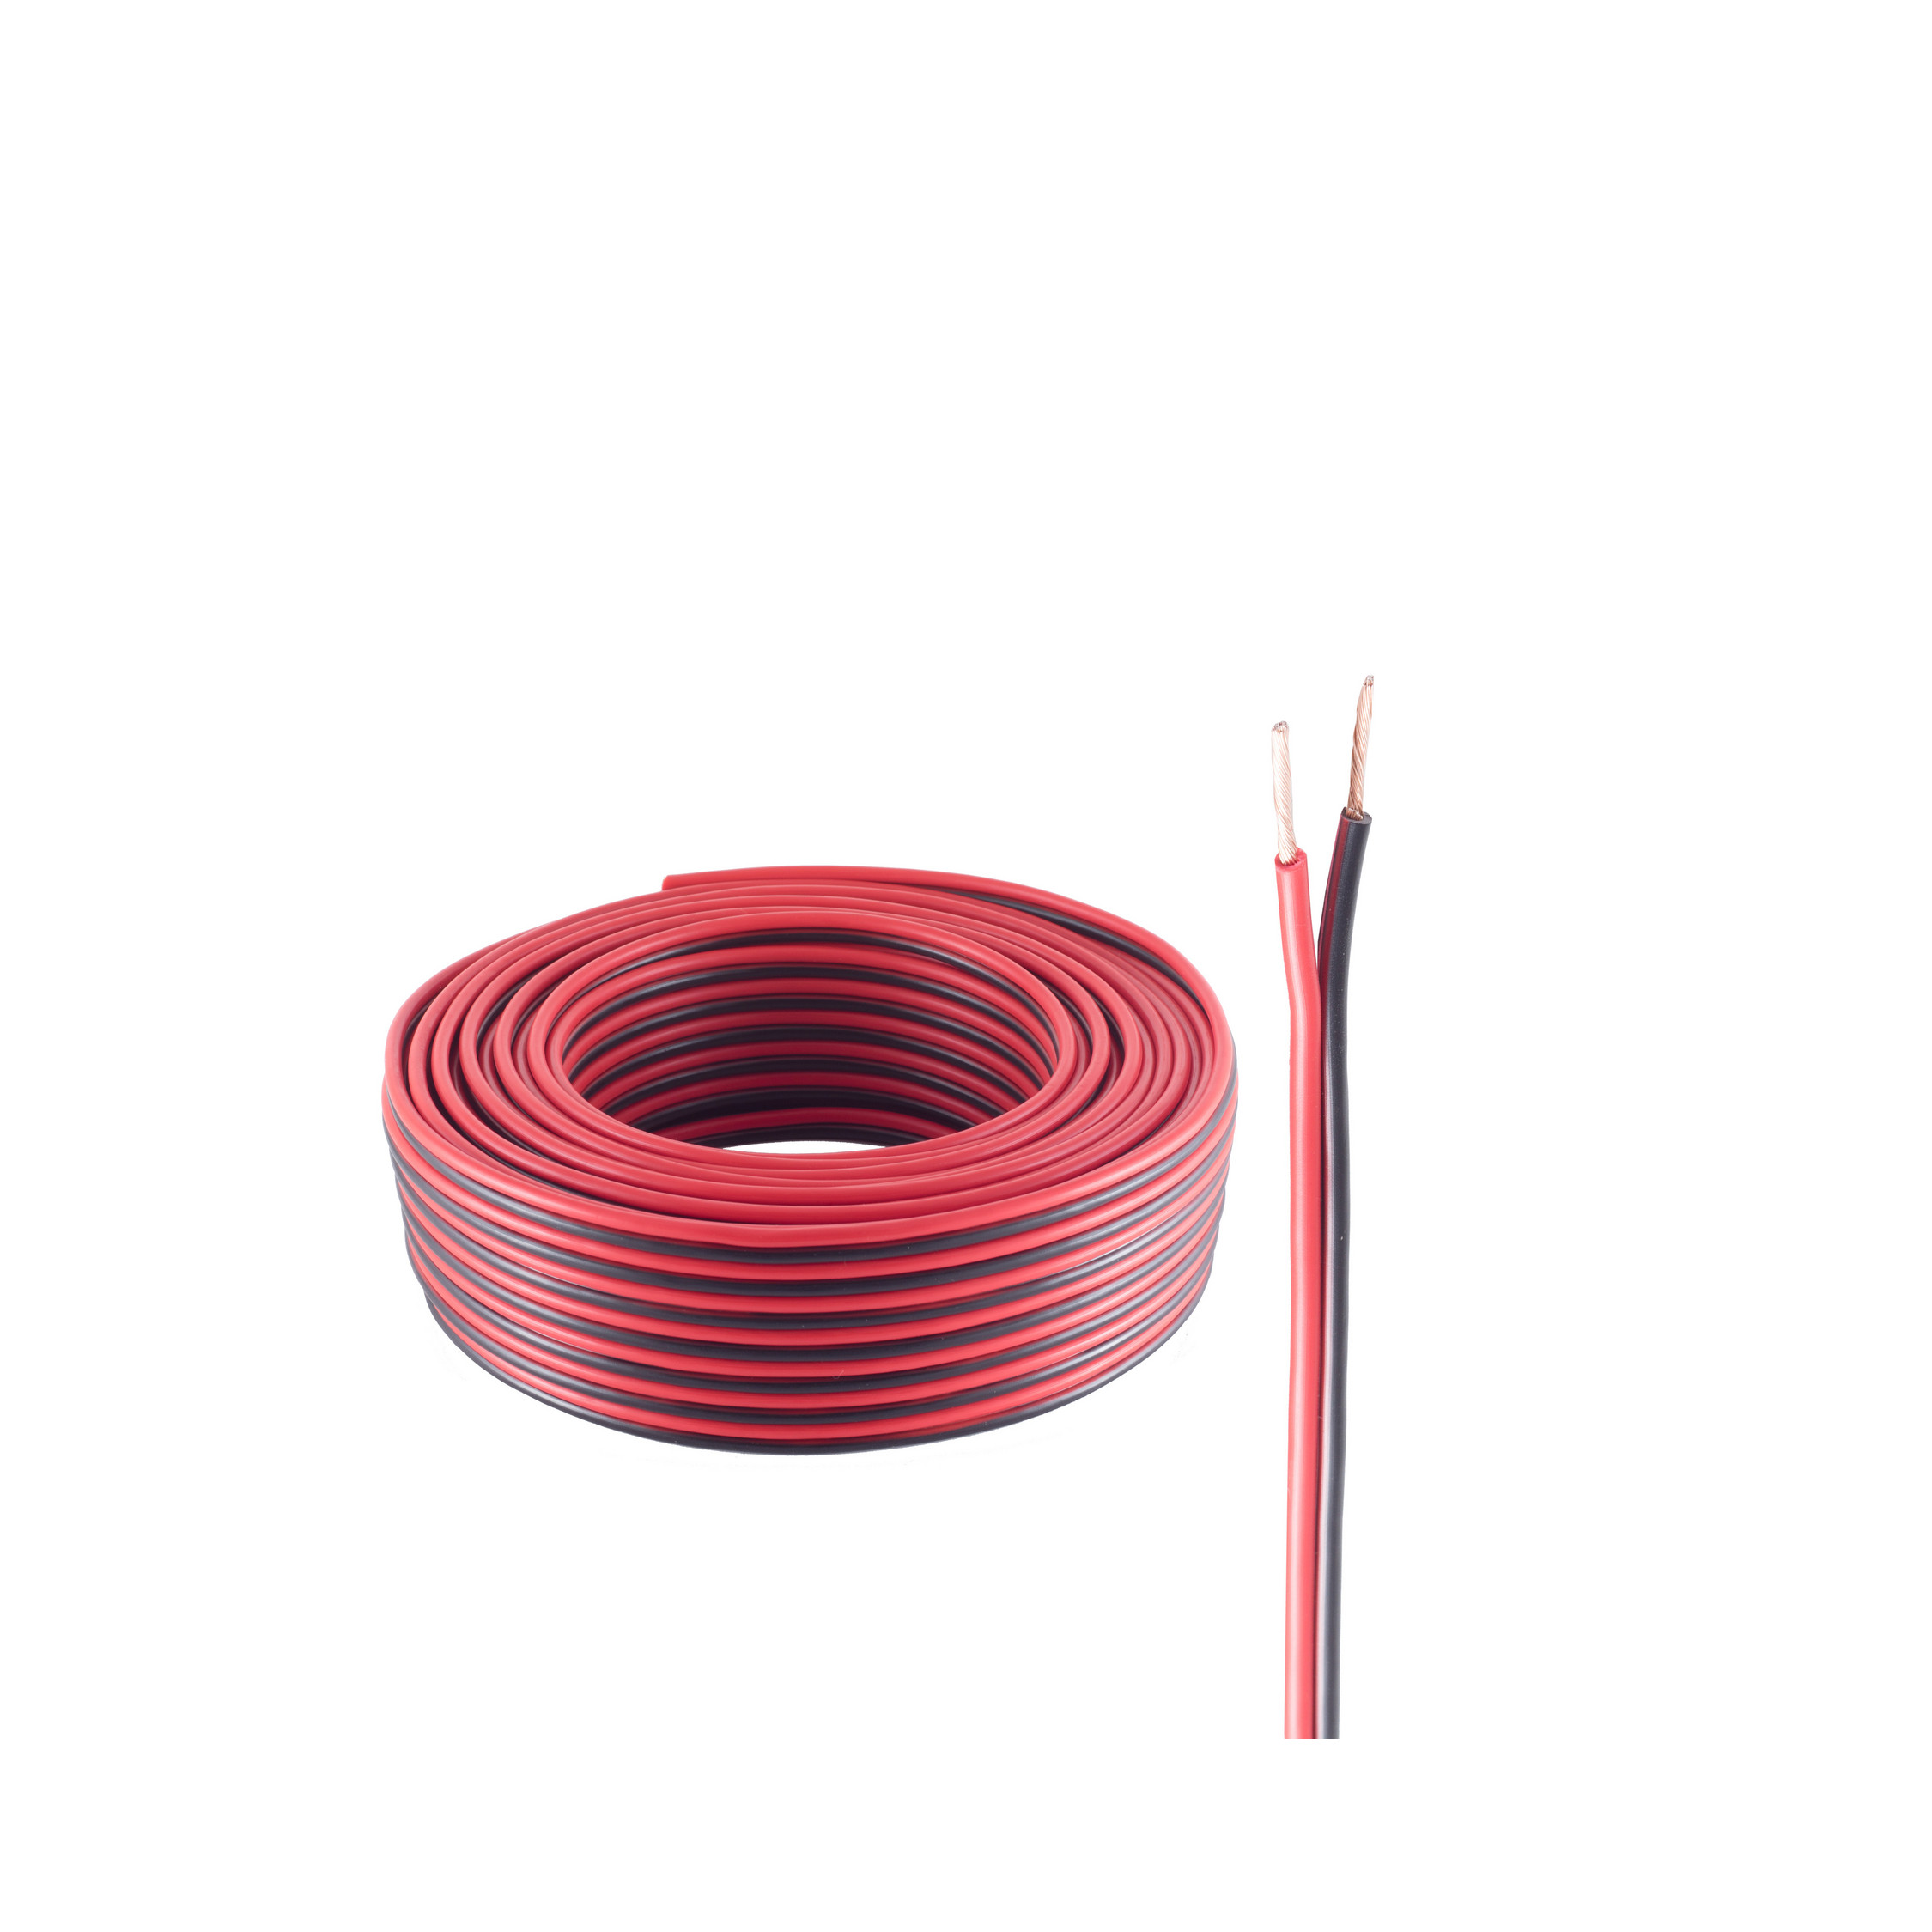 SHIVERPEAKS LS-Kabel 0,75mm² 24x0,2 CCA rot/schwarz Kabel, Lautsprecher 25m, m 25